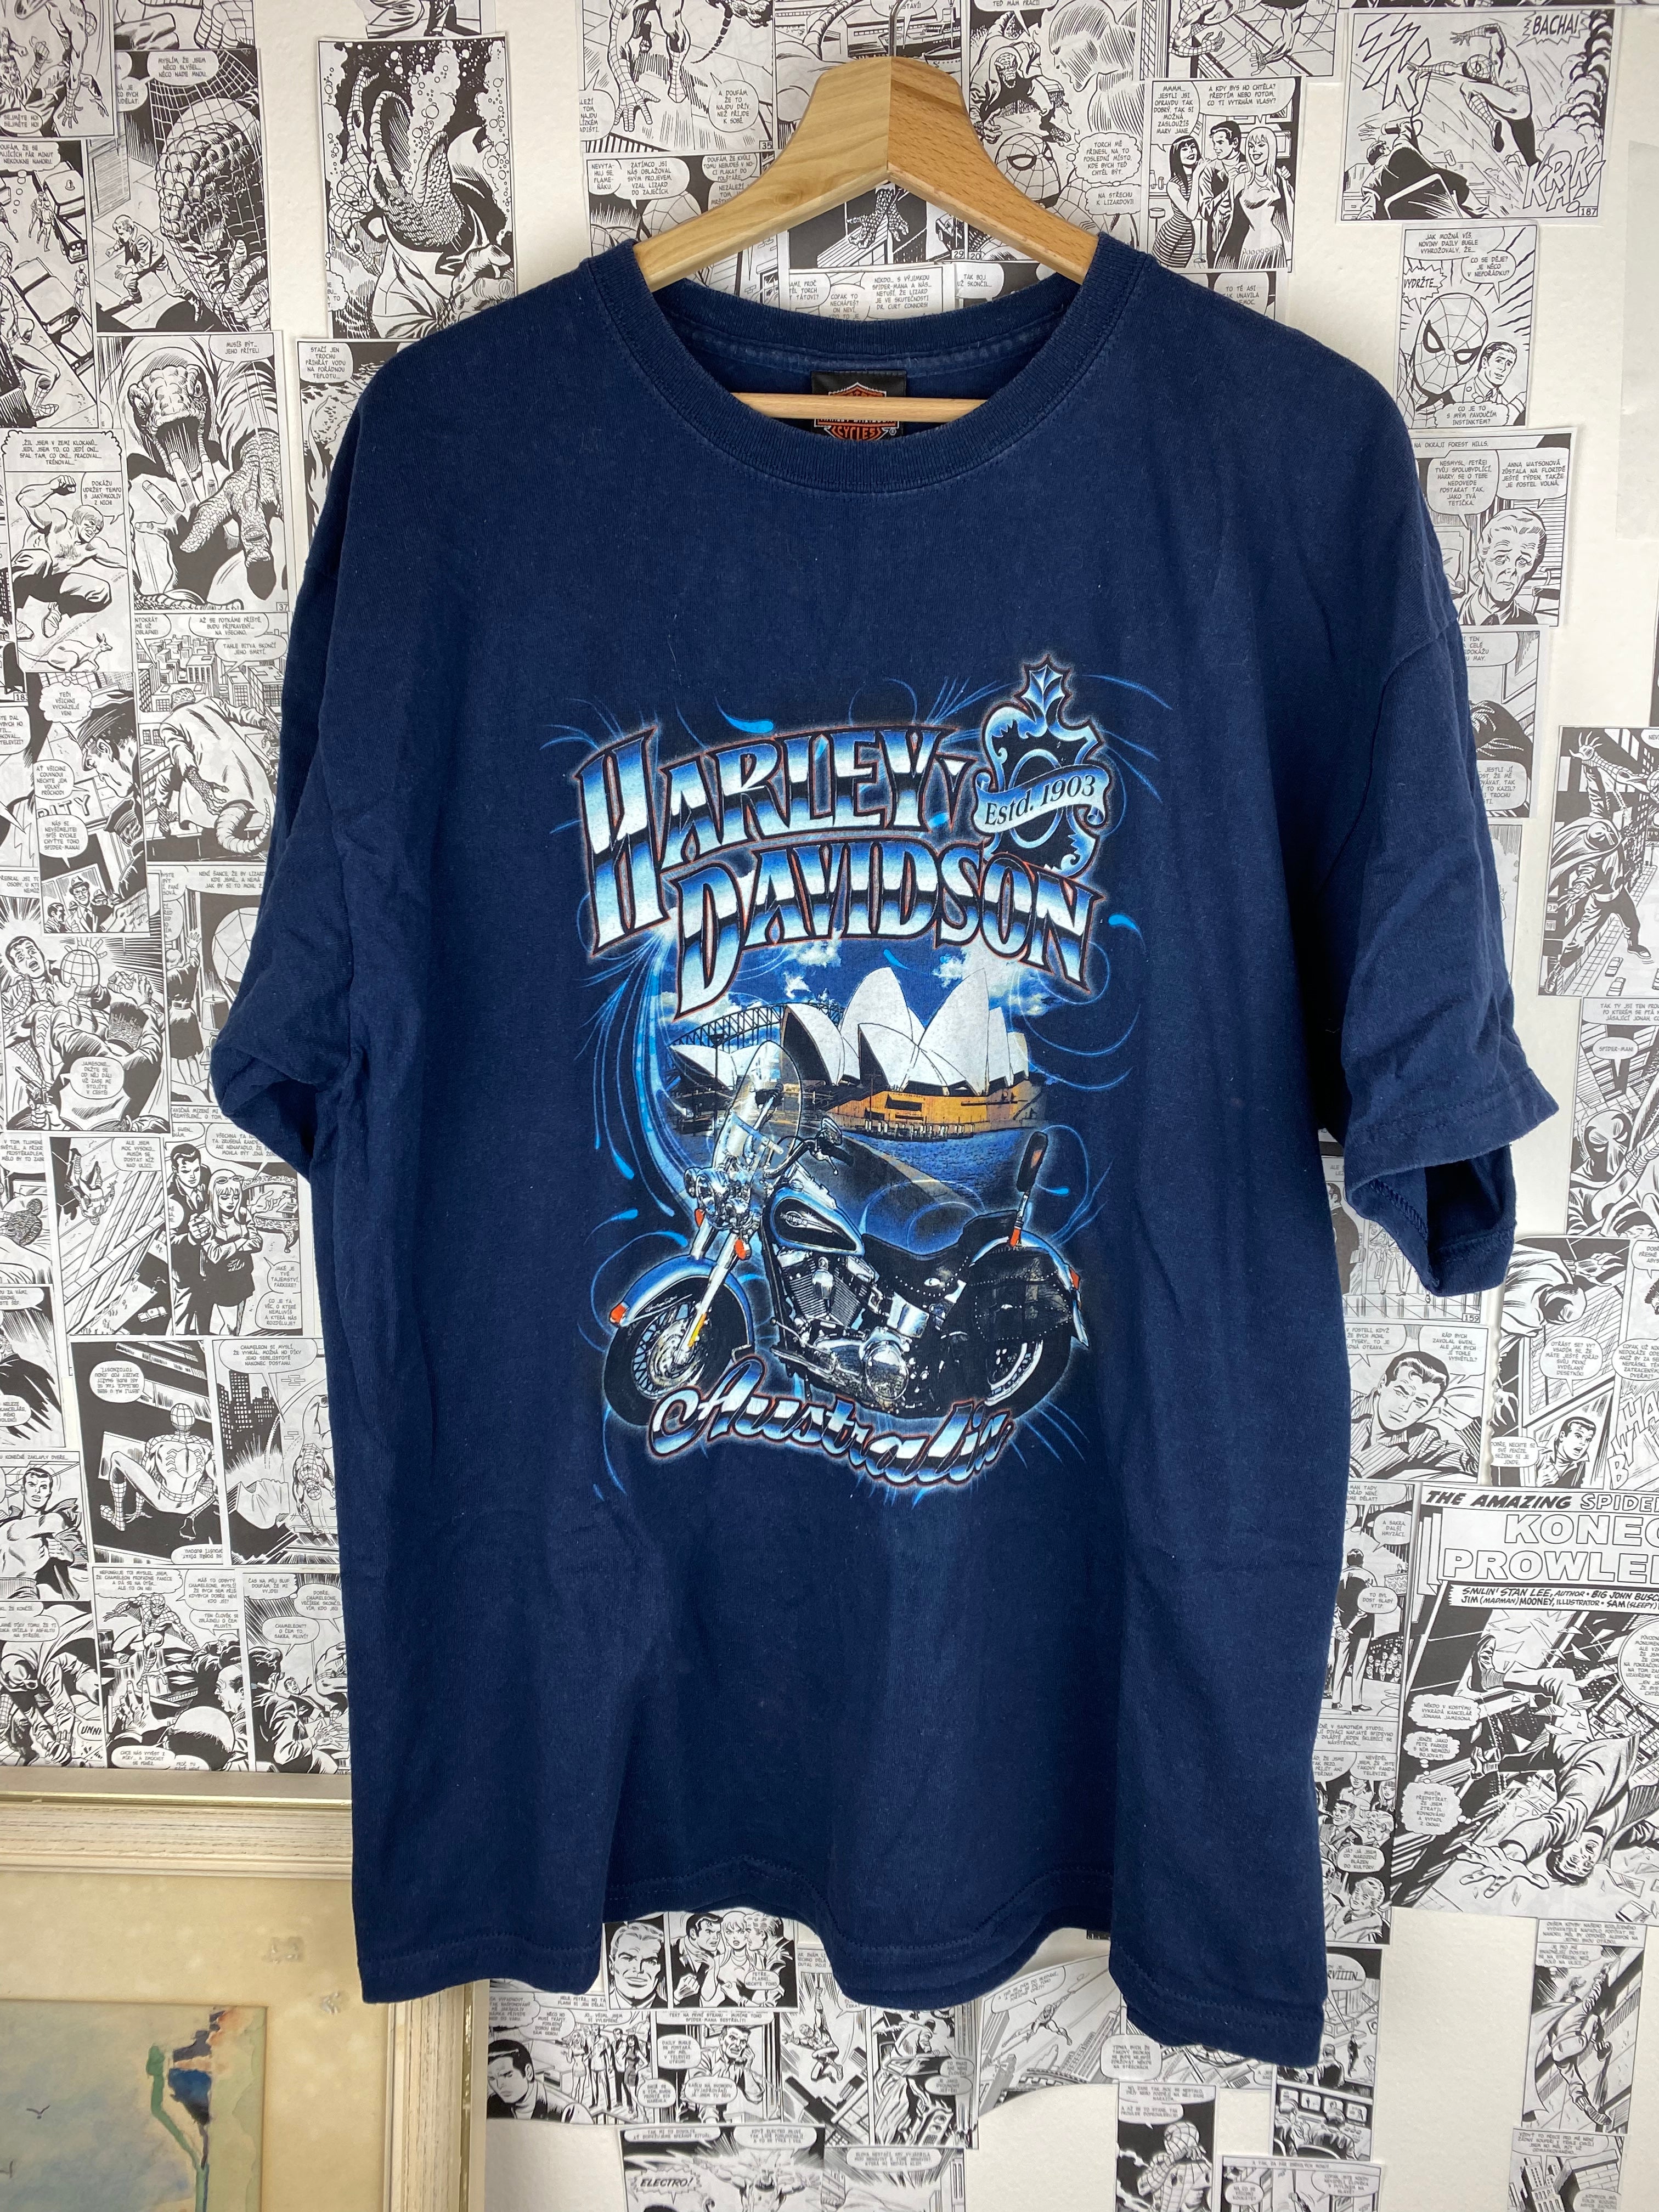 Vintage Harley Davidson - Sydney - Australia t-shirt